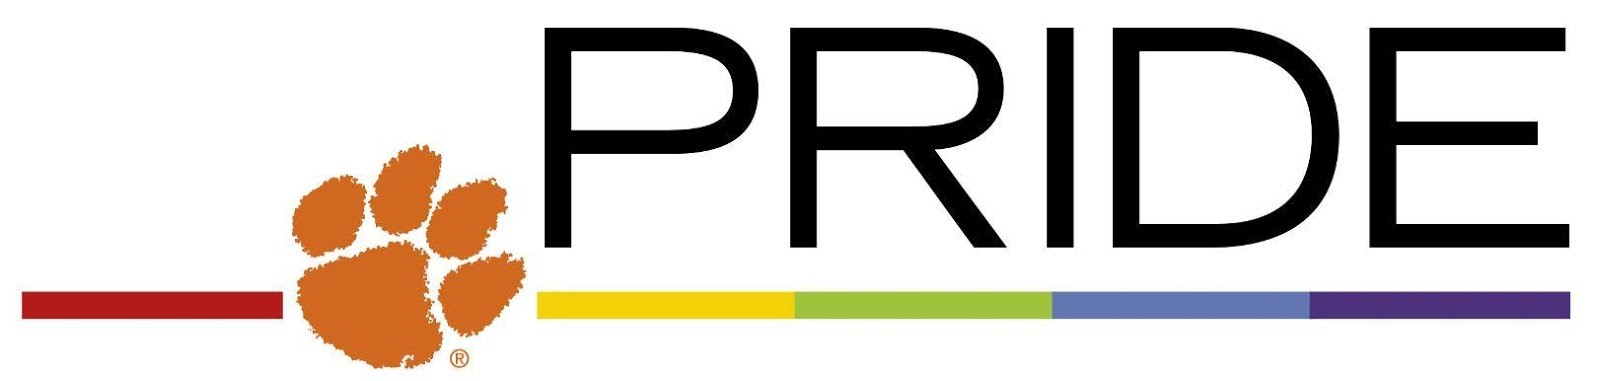 pride-logo-002.jpg